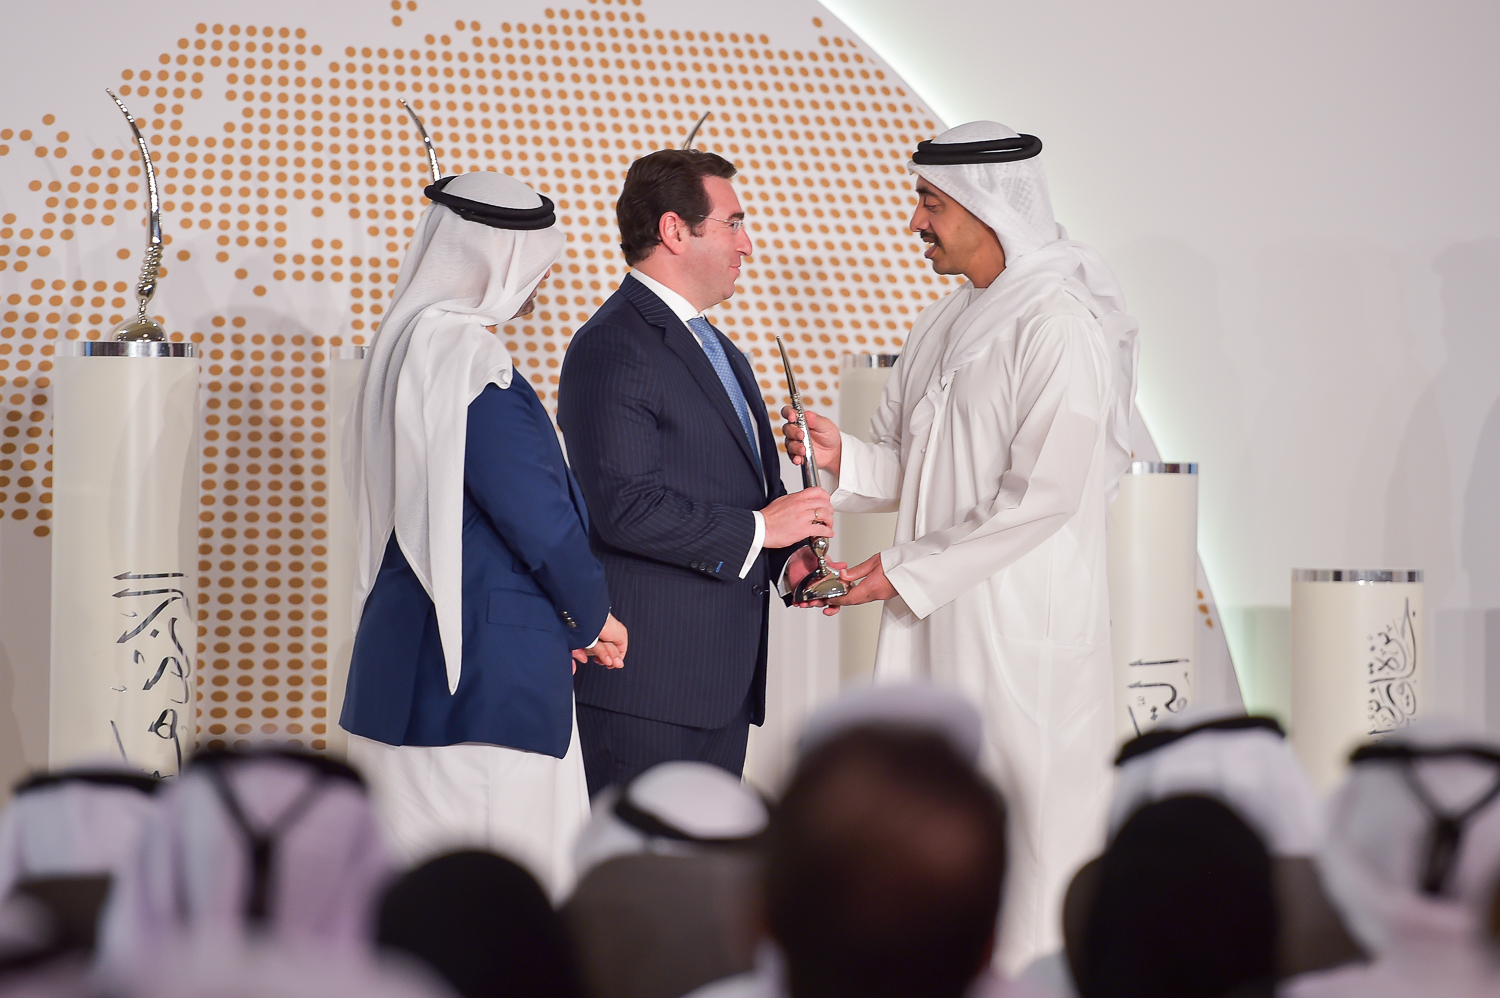 La Embajada de Colombia en Emiratos Árabes Unidos recibió el “Premio a la Excelencia” por su excepcional cooperación con el Ministerio de Relaciones Exteriores